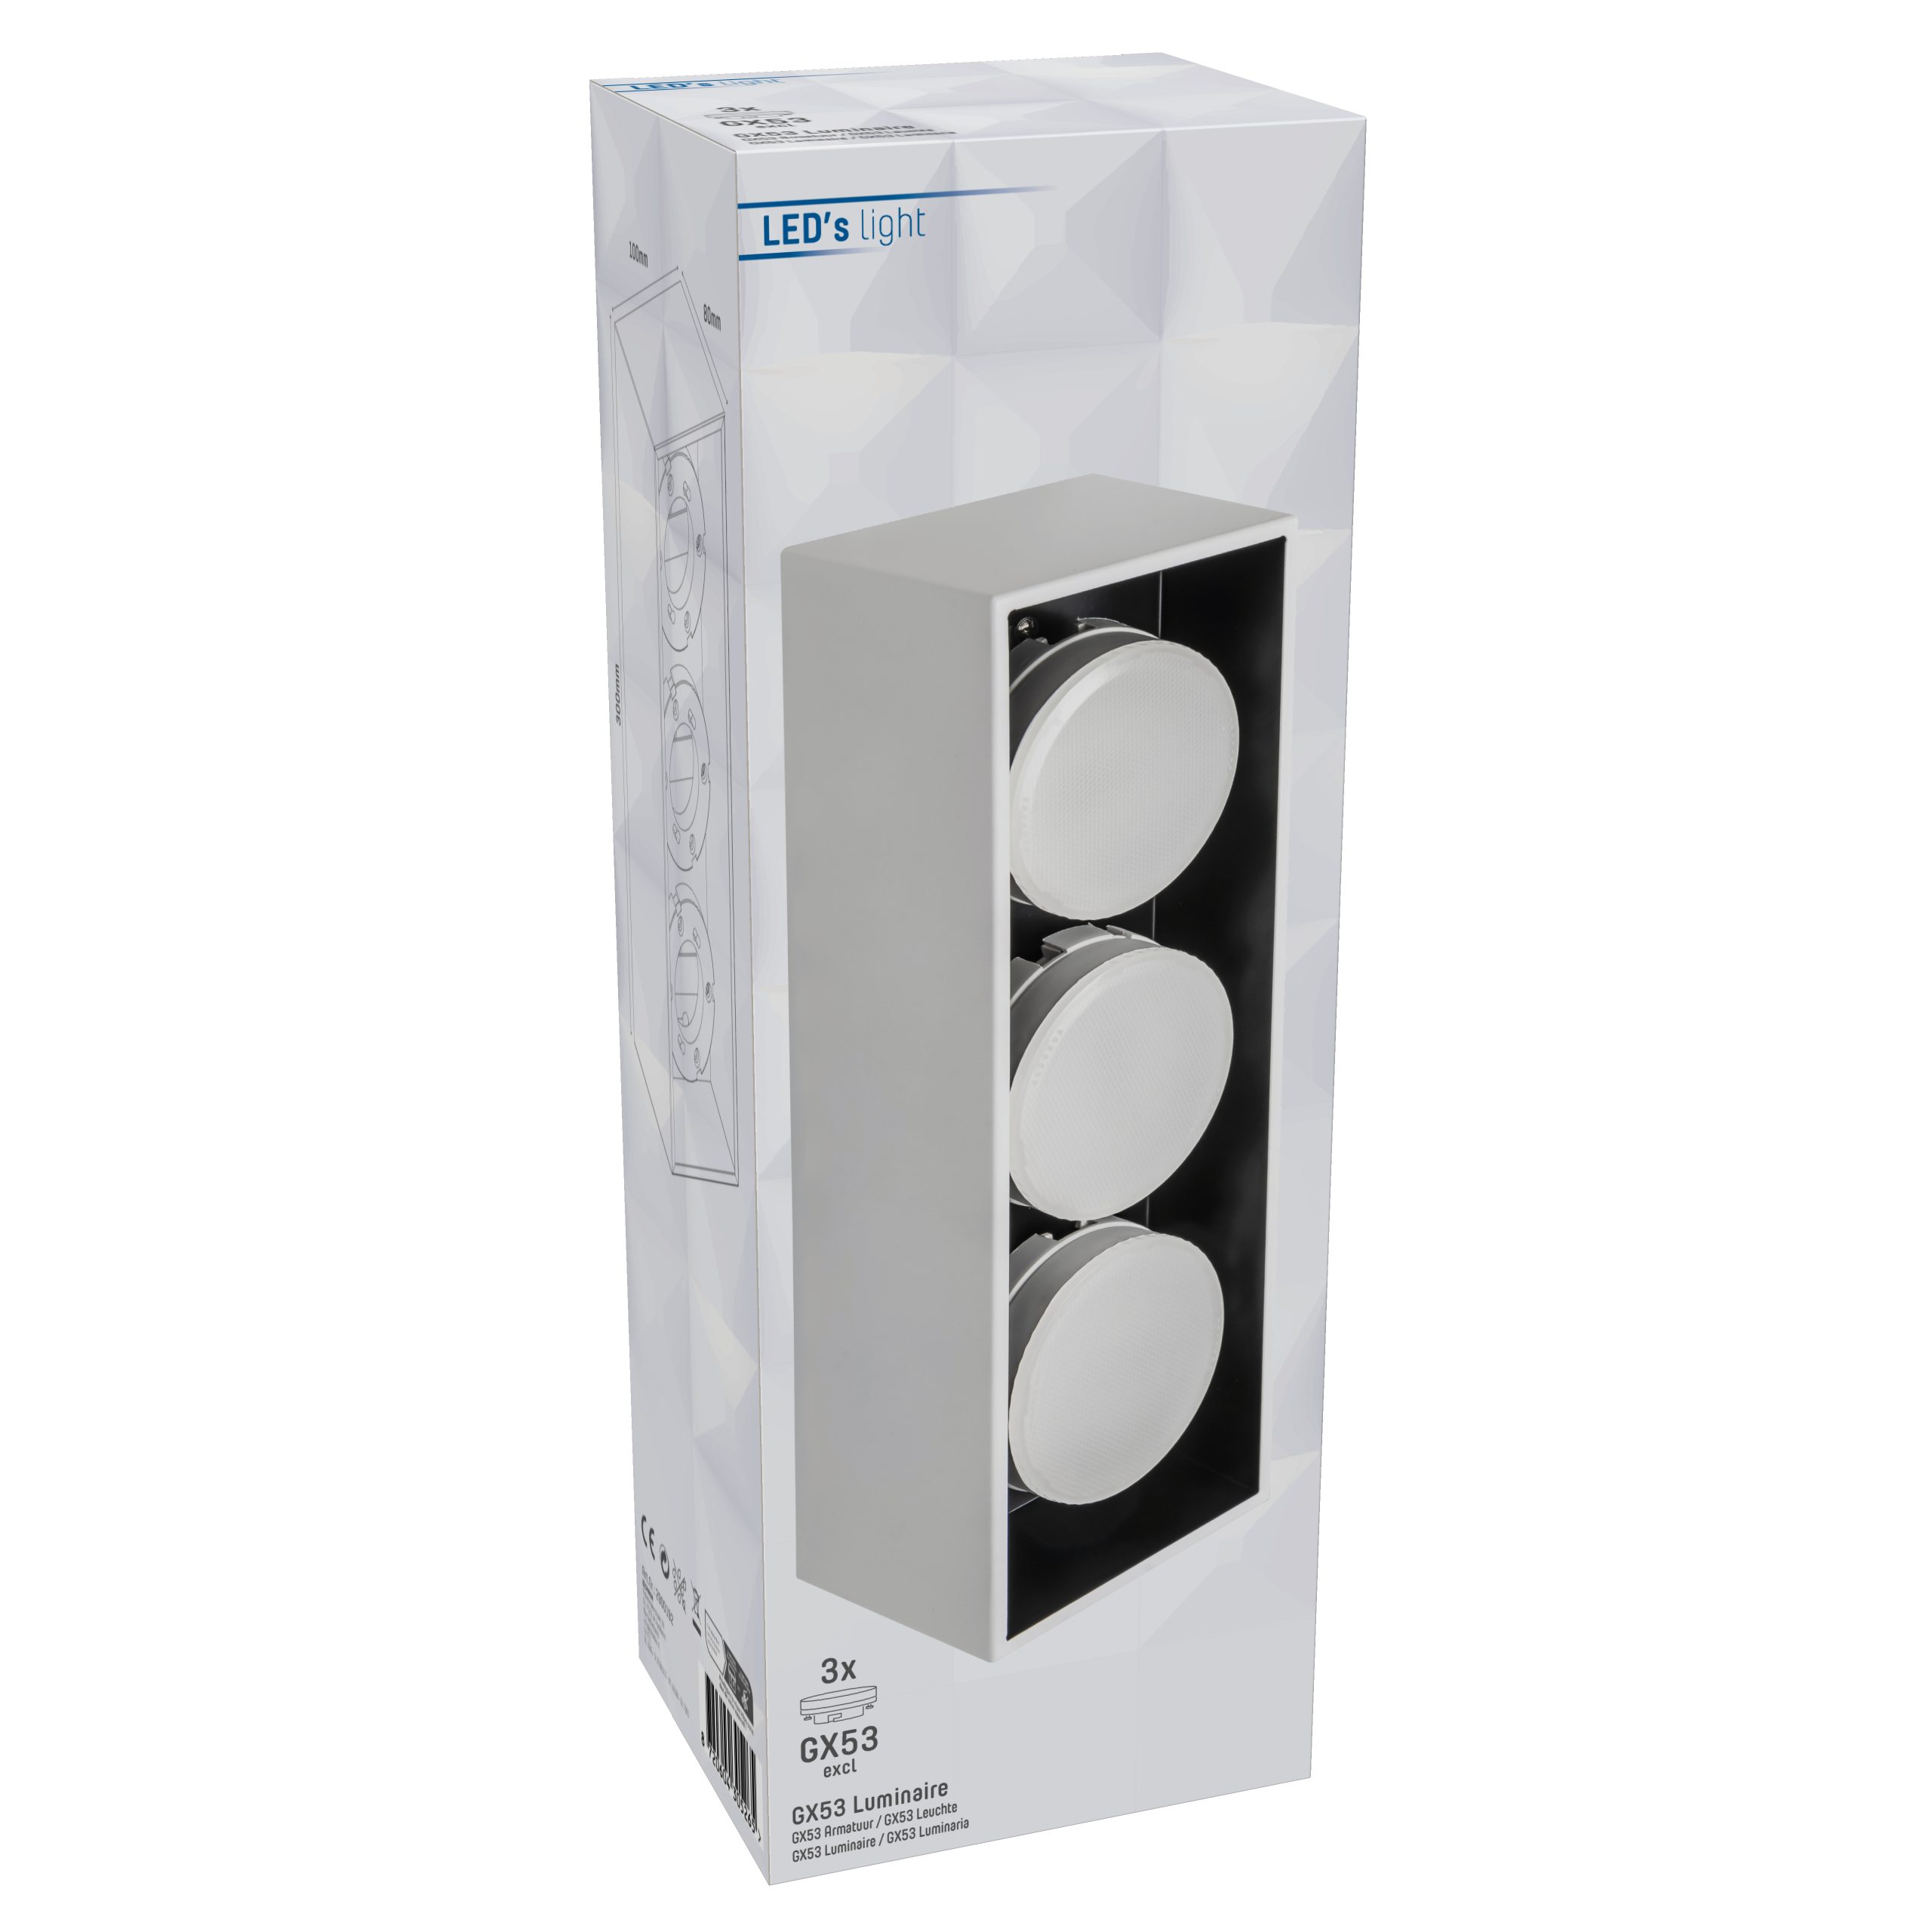 weiß LED Deckenleuchte, 2900192 Deckenleuchte bis GX53 light LED, 3x 12W LED's